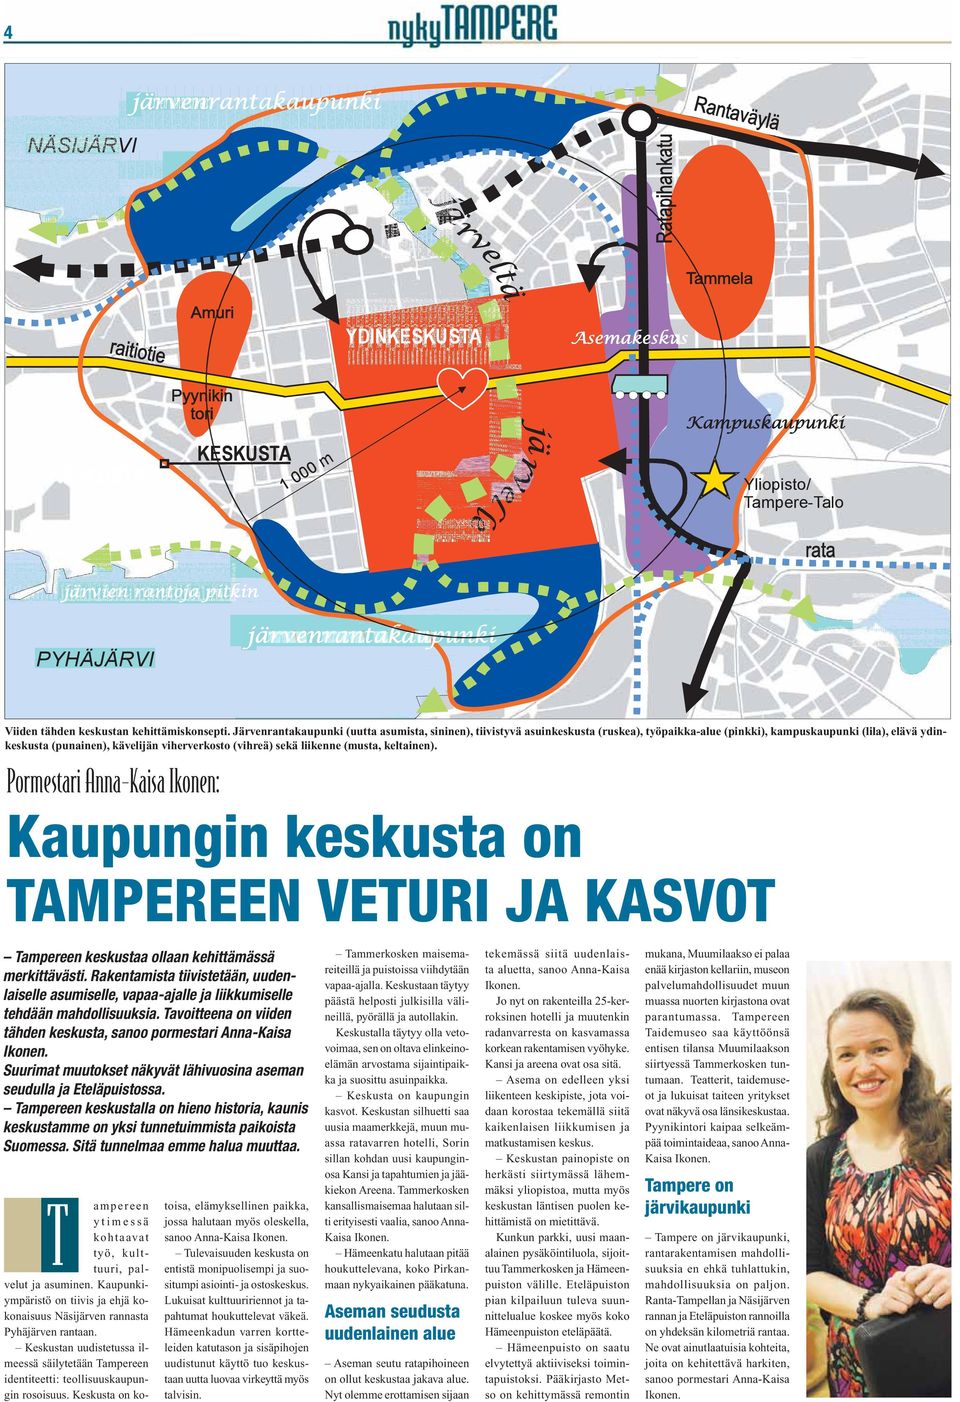 liikenne (musta, keltainen). Pormestari Anna-Kaisa Ikonen: Kaupungin keskusta on TAMPEREEN VETURI JA KASVOT Tampereen keskustaa ollaan kehittämässä merkittävästi.